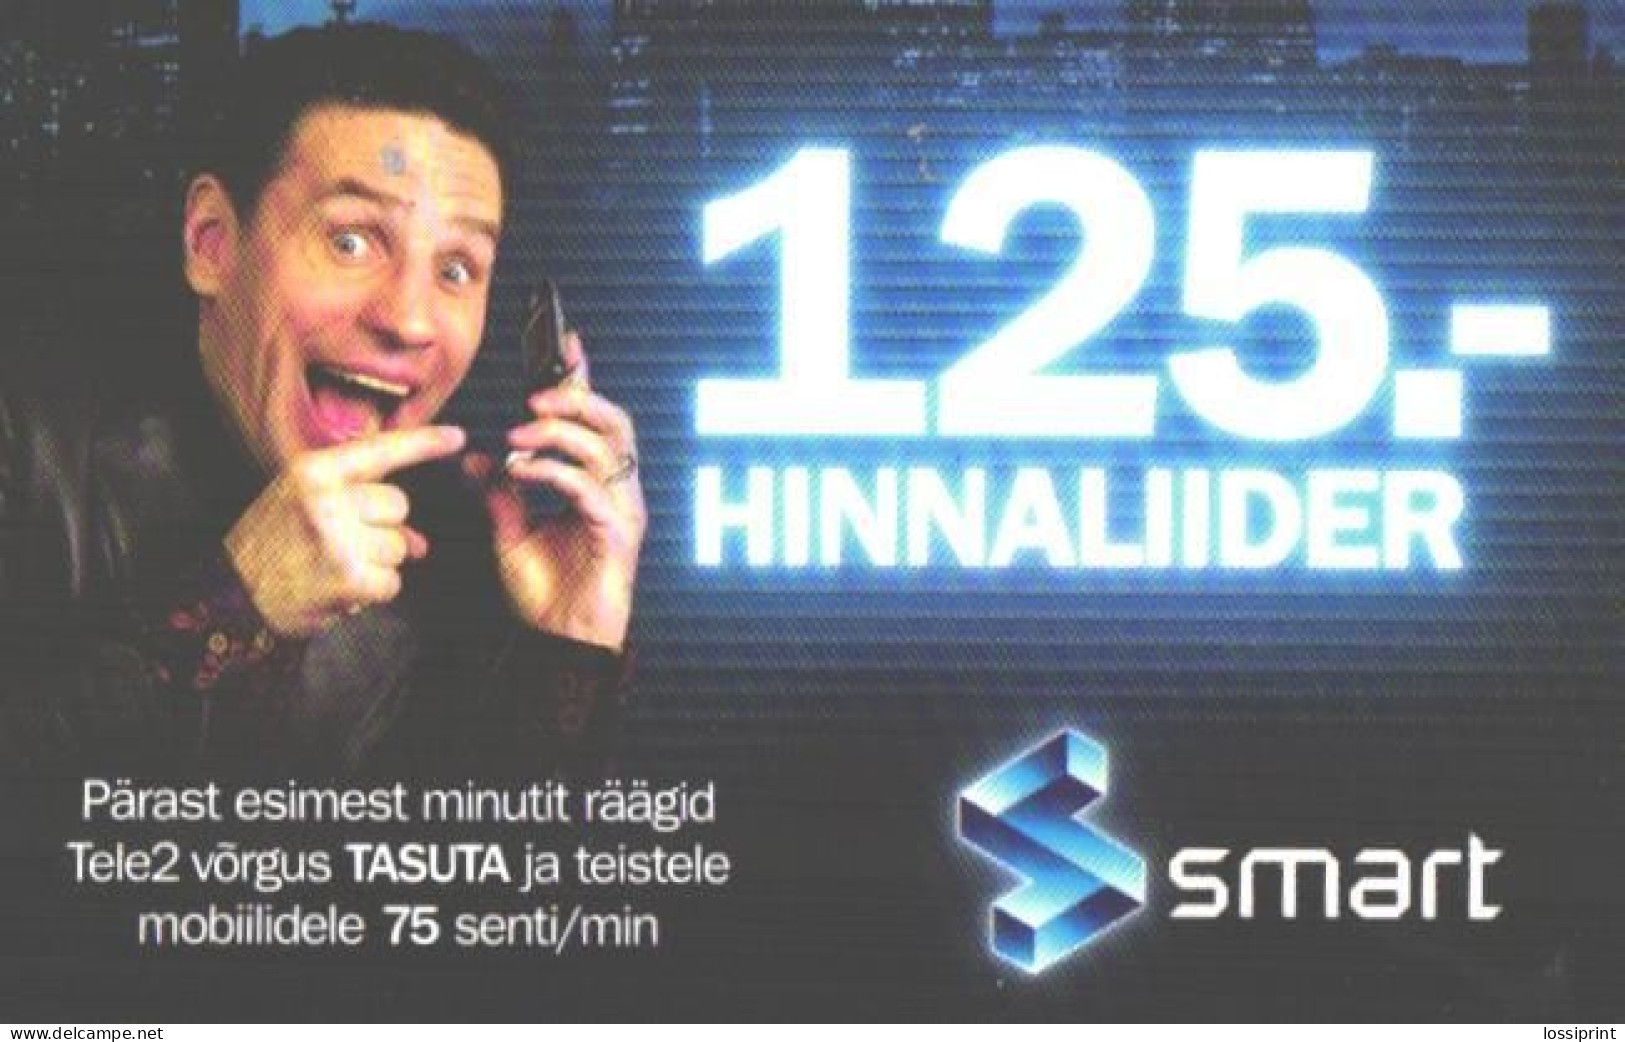 Estonia:Used Phonecard, Tele 2, Smart 125 Krooni, Young Man, Mobile Phone Prepaid Card, 2013 - Estonia